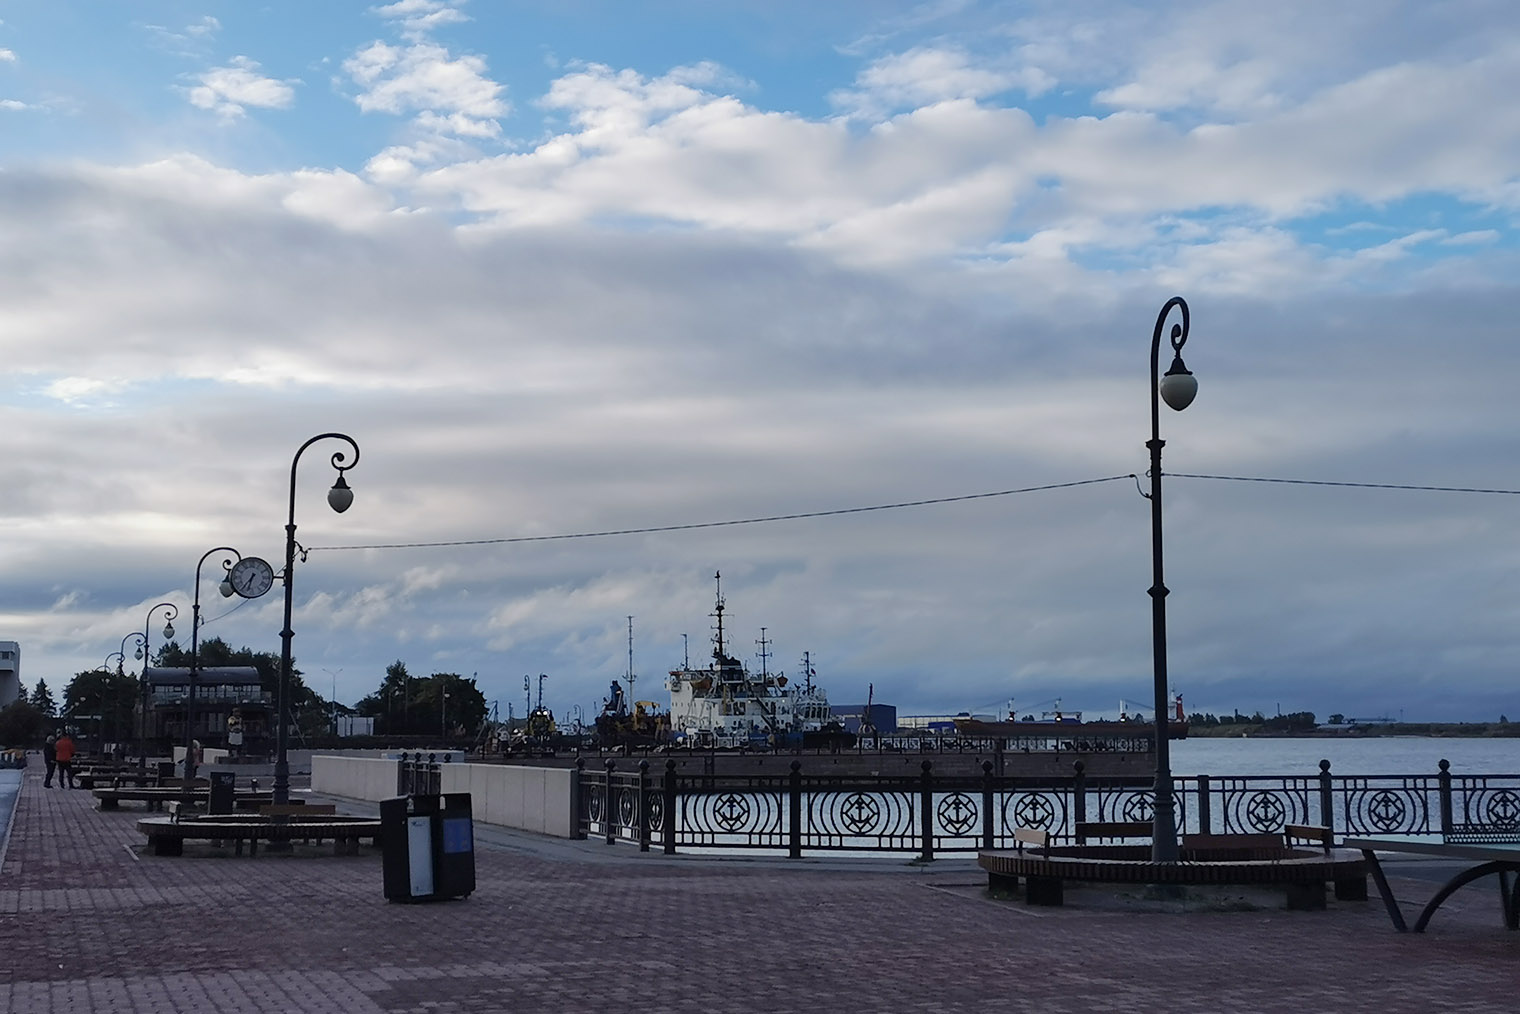 Набережная в Архангельске длинная и широкая, с красивым видом — как будто специально создана для занятий спортом. В конце поездки я отважилась выйти на пробежку